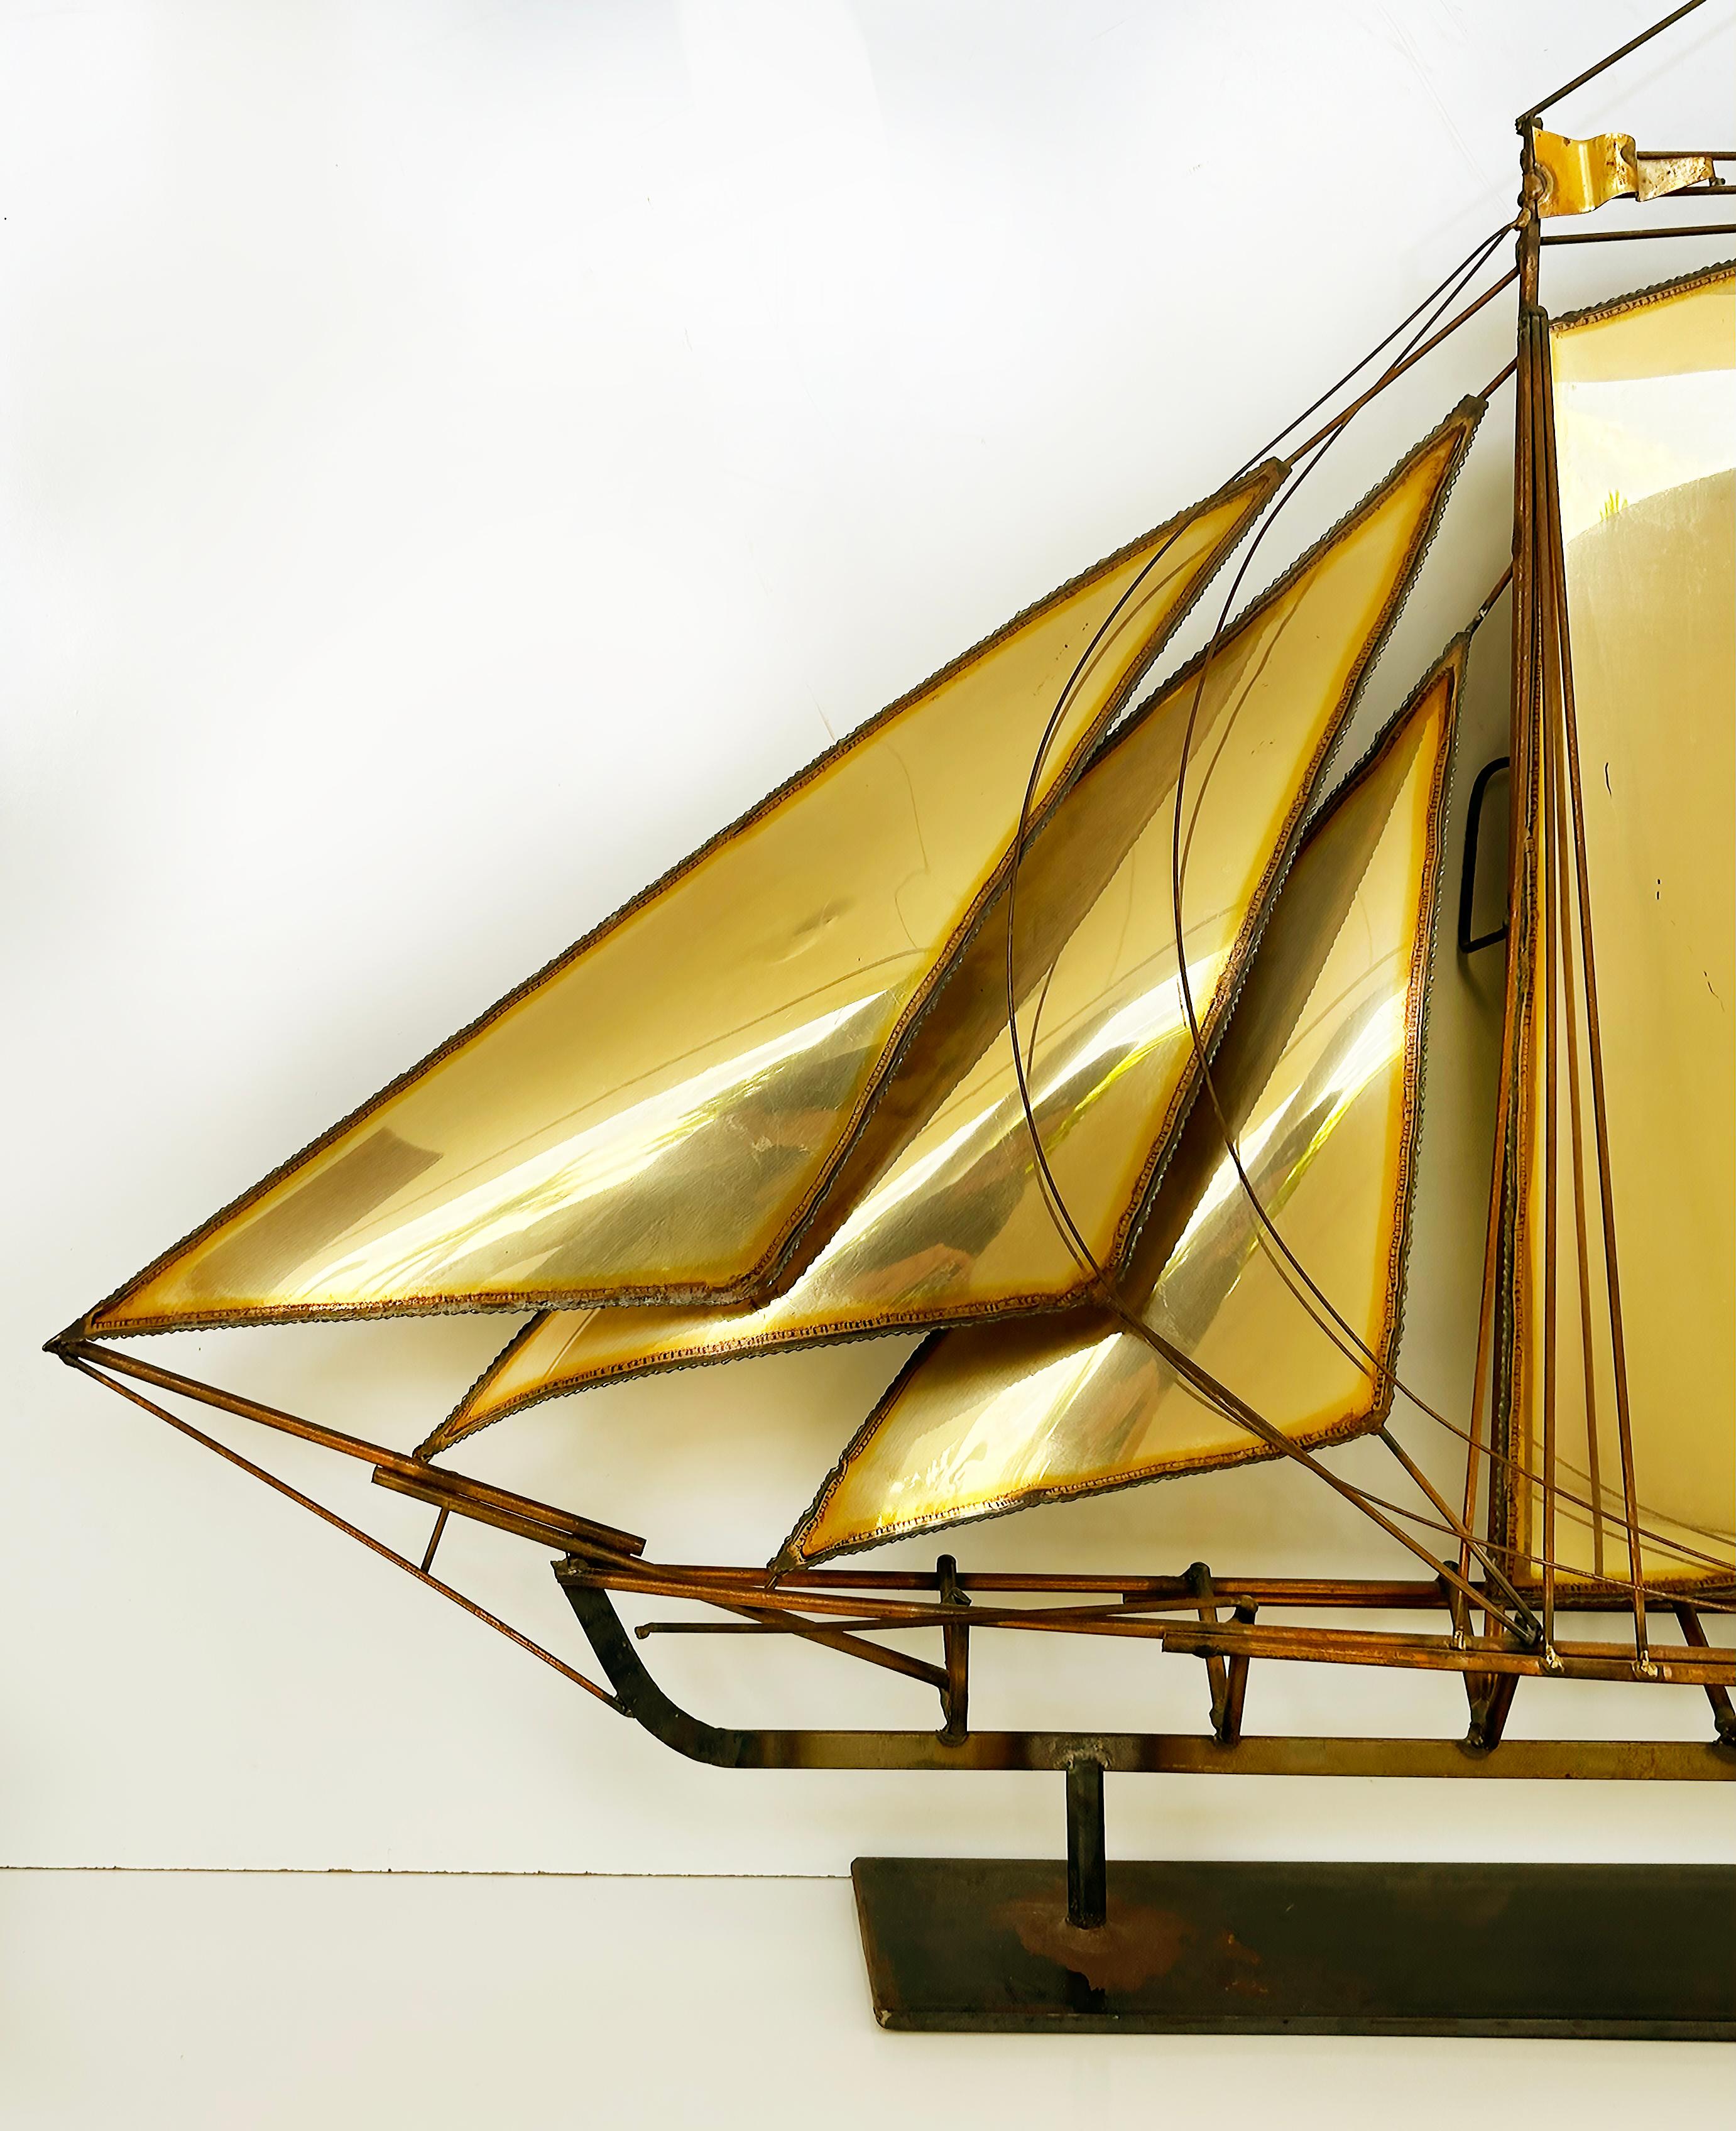 Große segelboot-Skulptur aus Messing, brutalistische Wandskulptur von John DeMott

Zum Verkauf angeboten wird eine große und auffällige Segelboot-Skulptur des kalifornischen Künstlers John DeMott (1954-). Die Skulptur ist aus Messing und kann auf